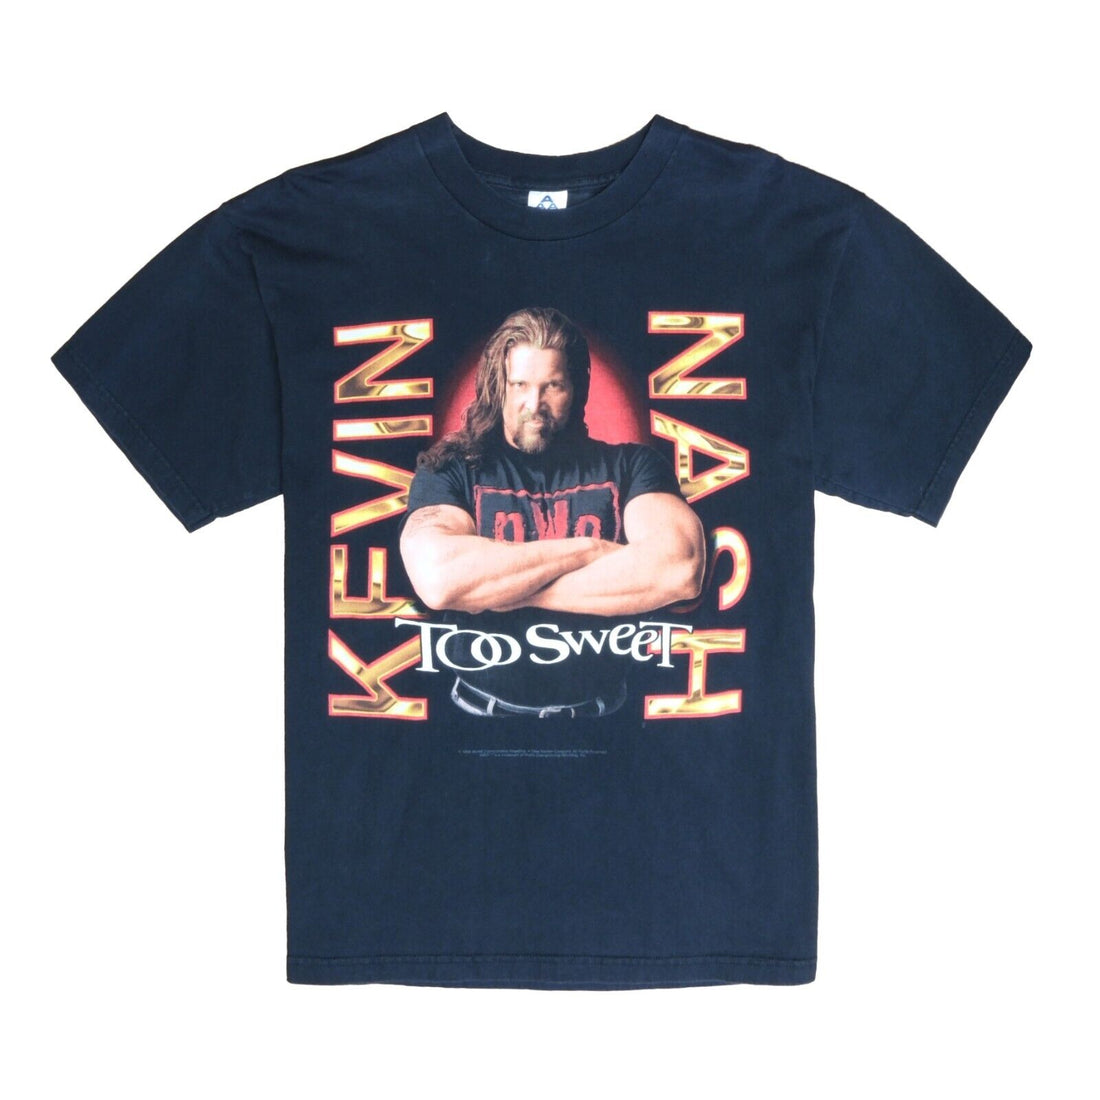 Vintage Kevin Nash NWO Too Sweet Wrestling T-Shirt Size XL Black 1998 90s WWF